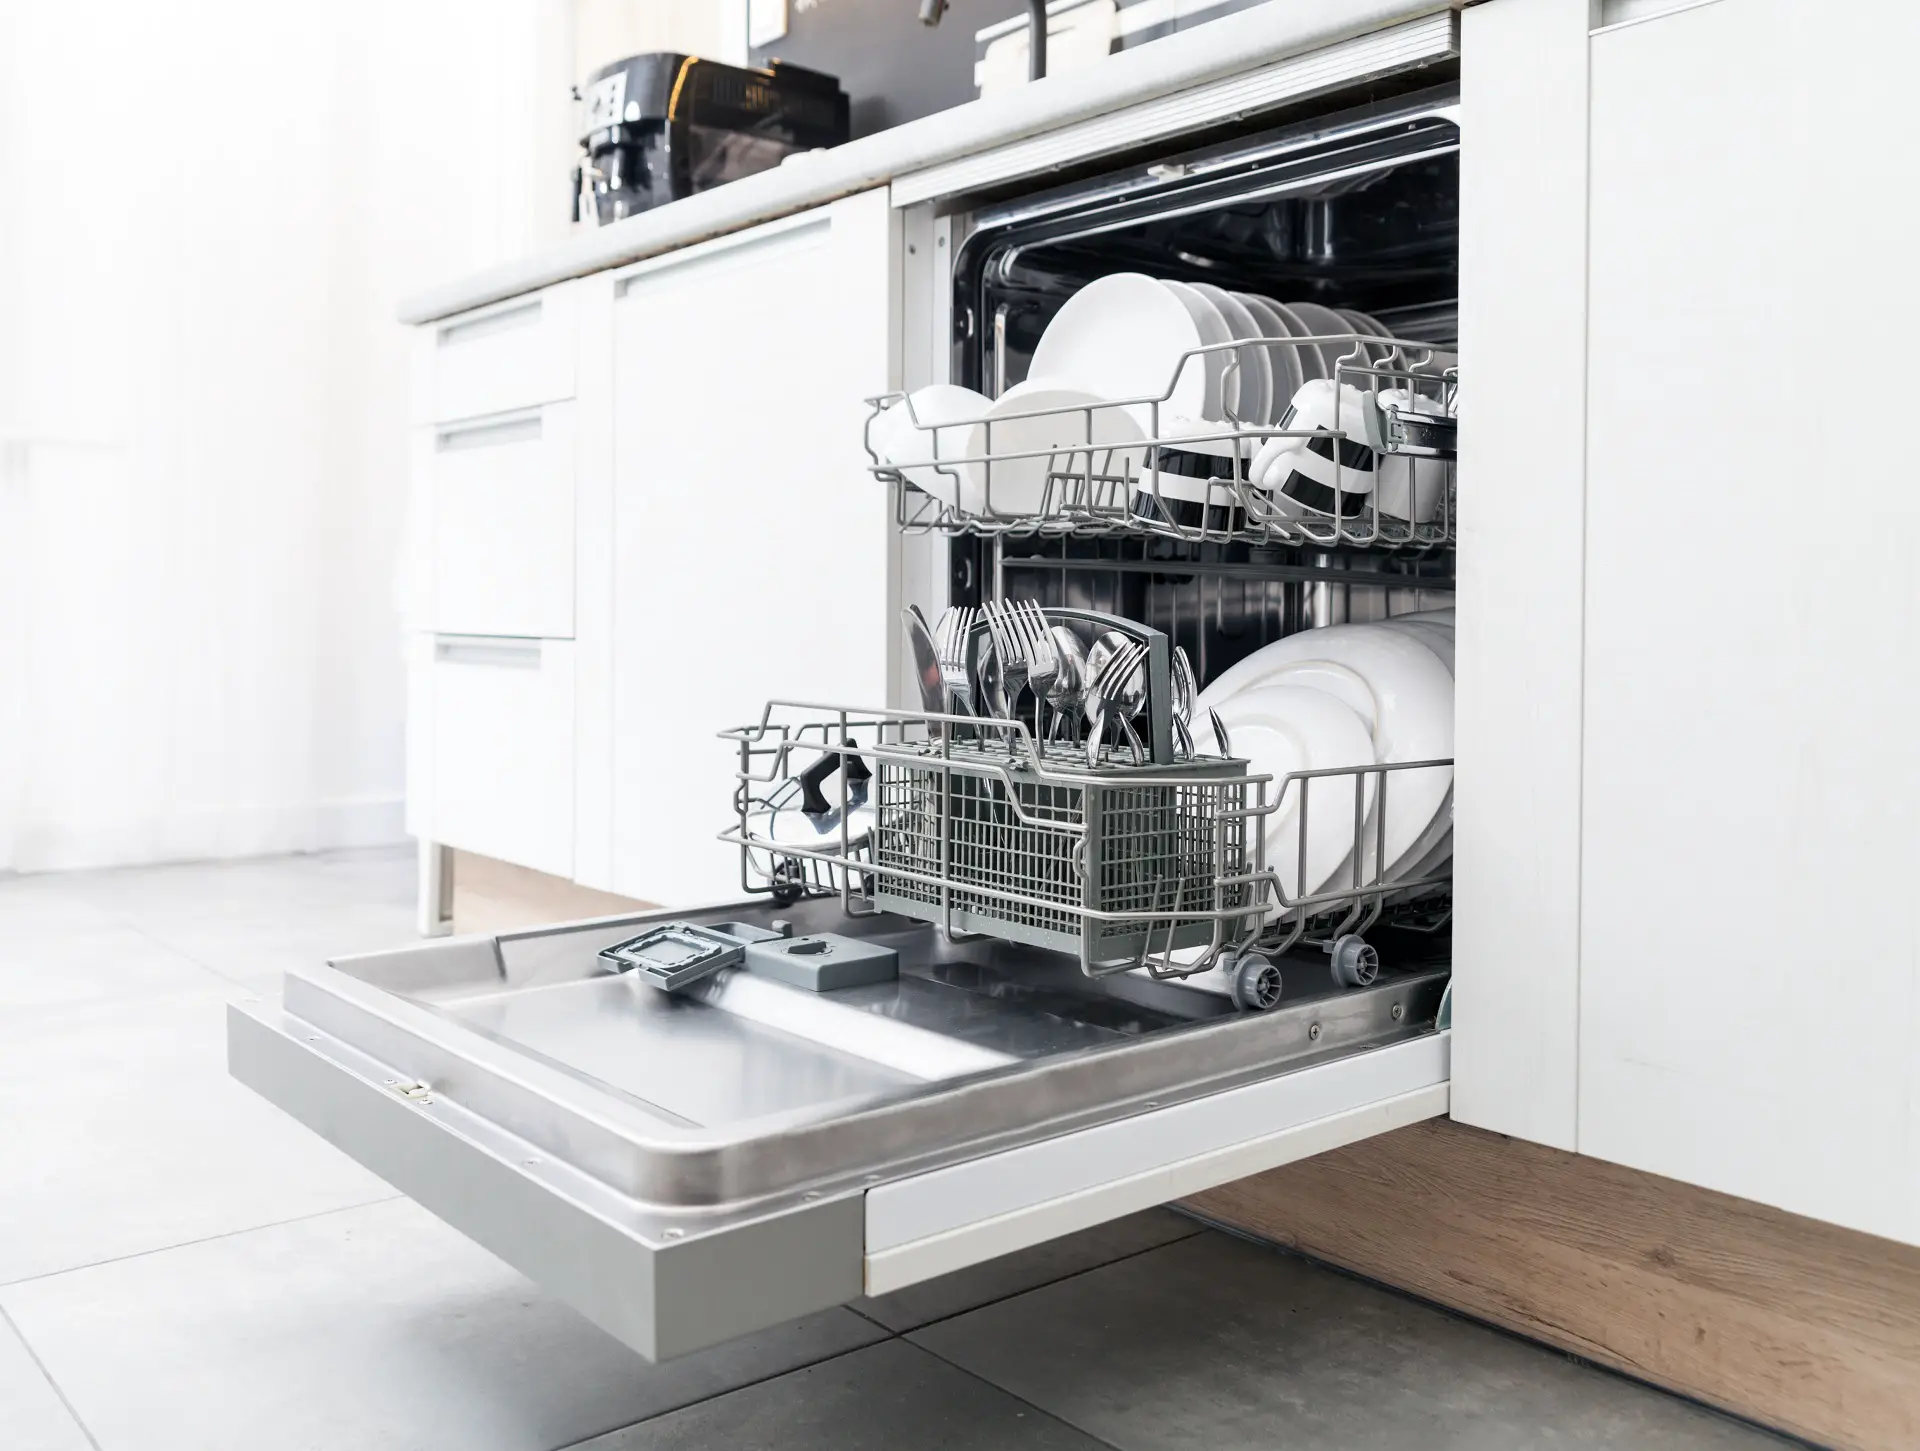 Best Dishwasher Under $400, $500, $600 